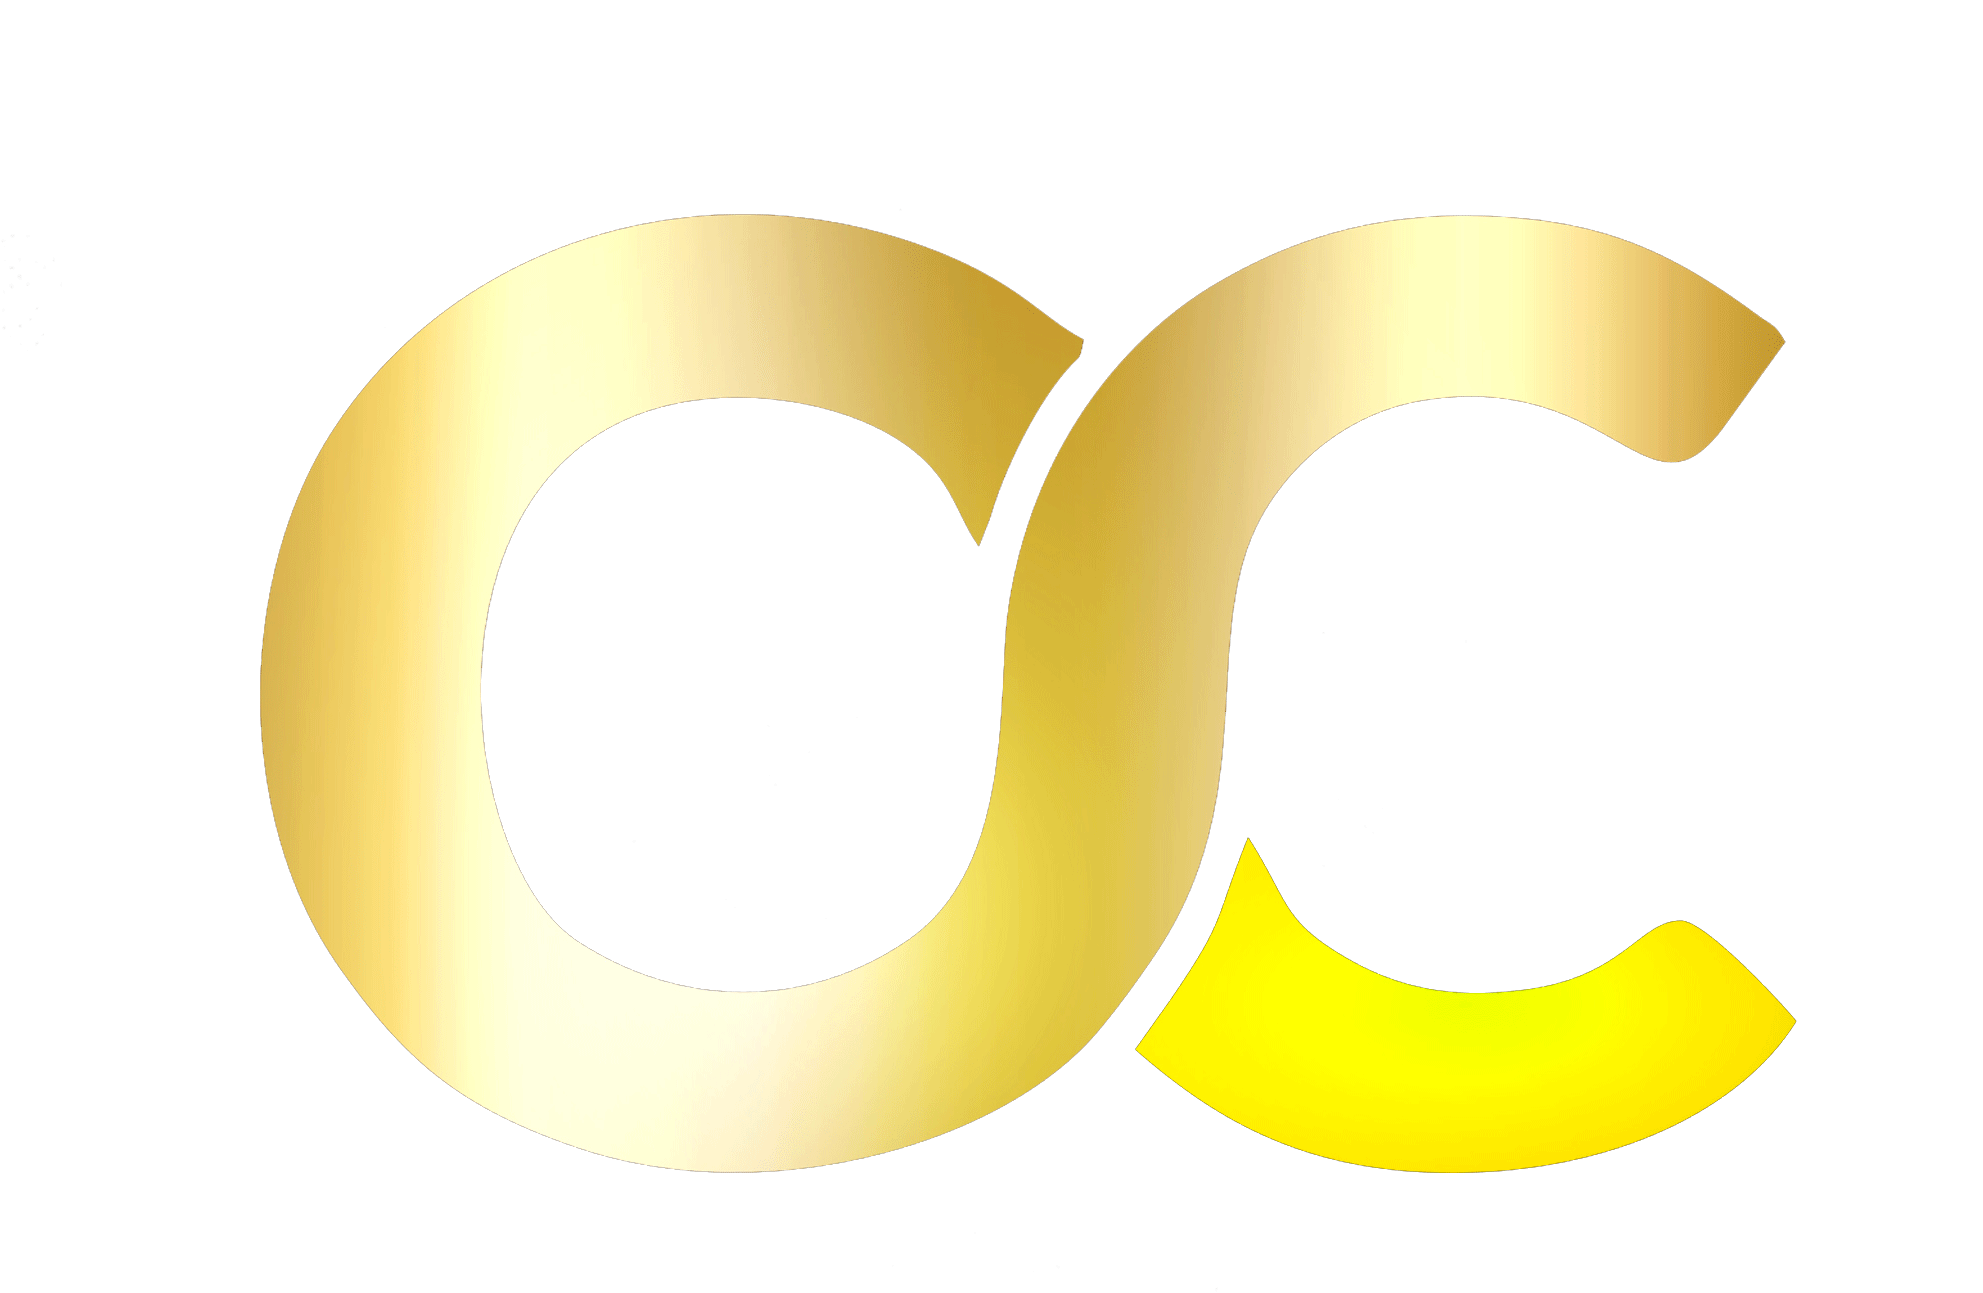 OC Logo - O.C. Designz. C. Designz